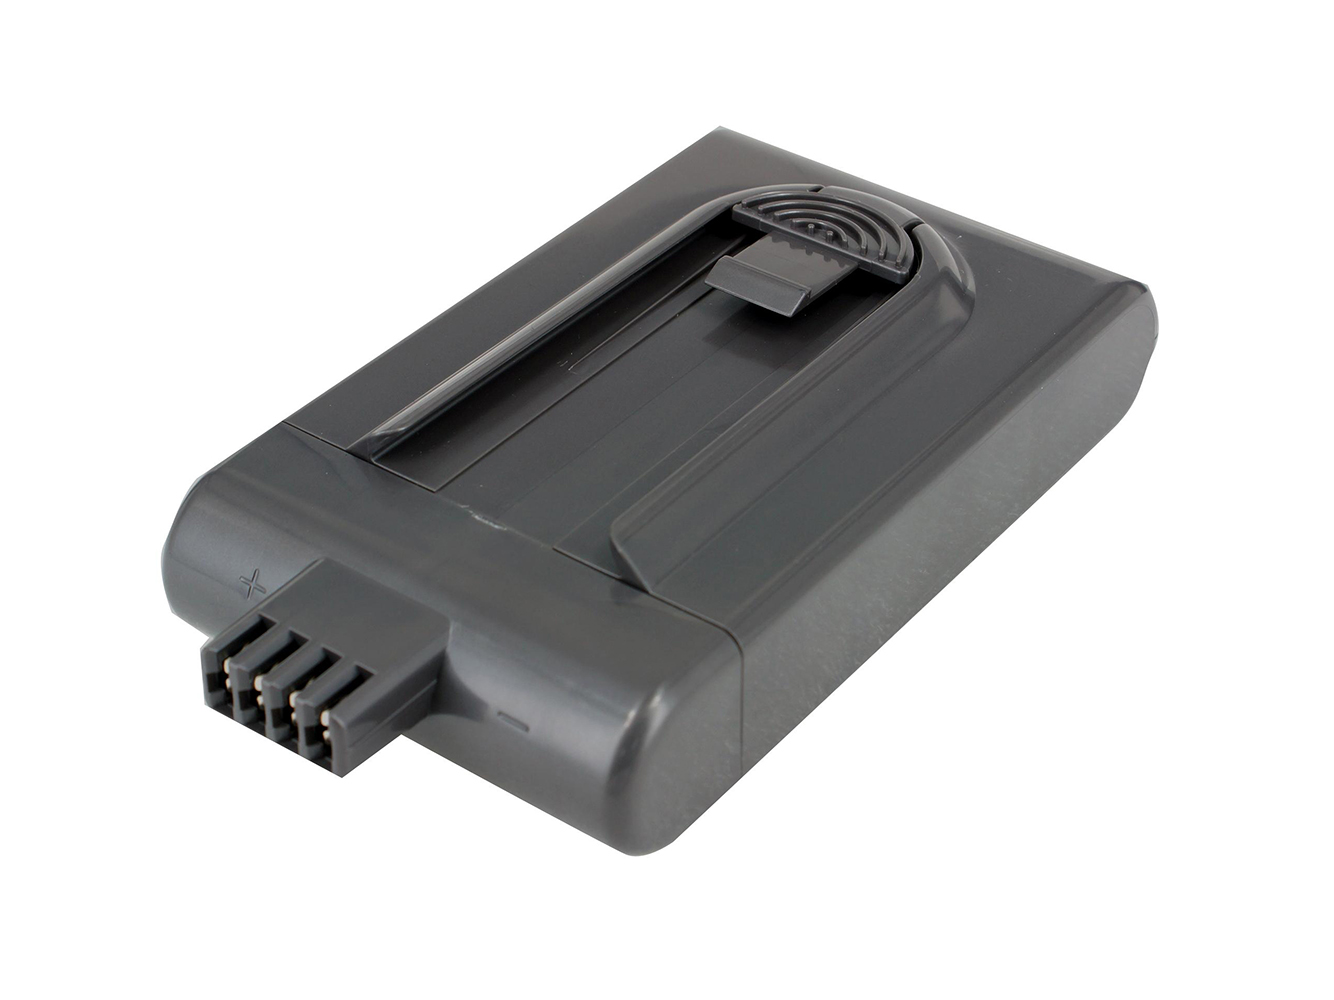 Remplacement compatible pour batterie d'aspirateur DYSON DC16, DC16 Animal, DC16 Car and Boat